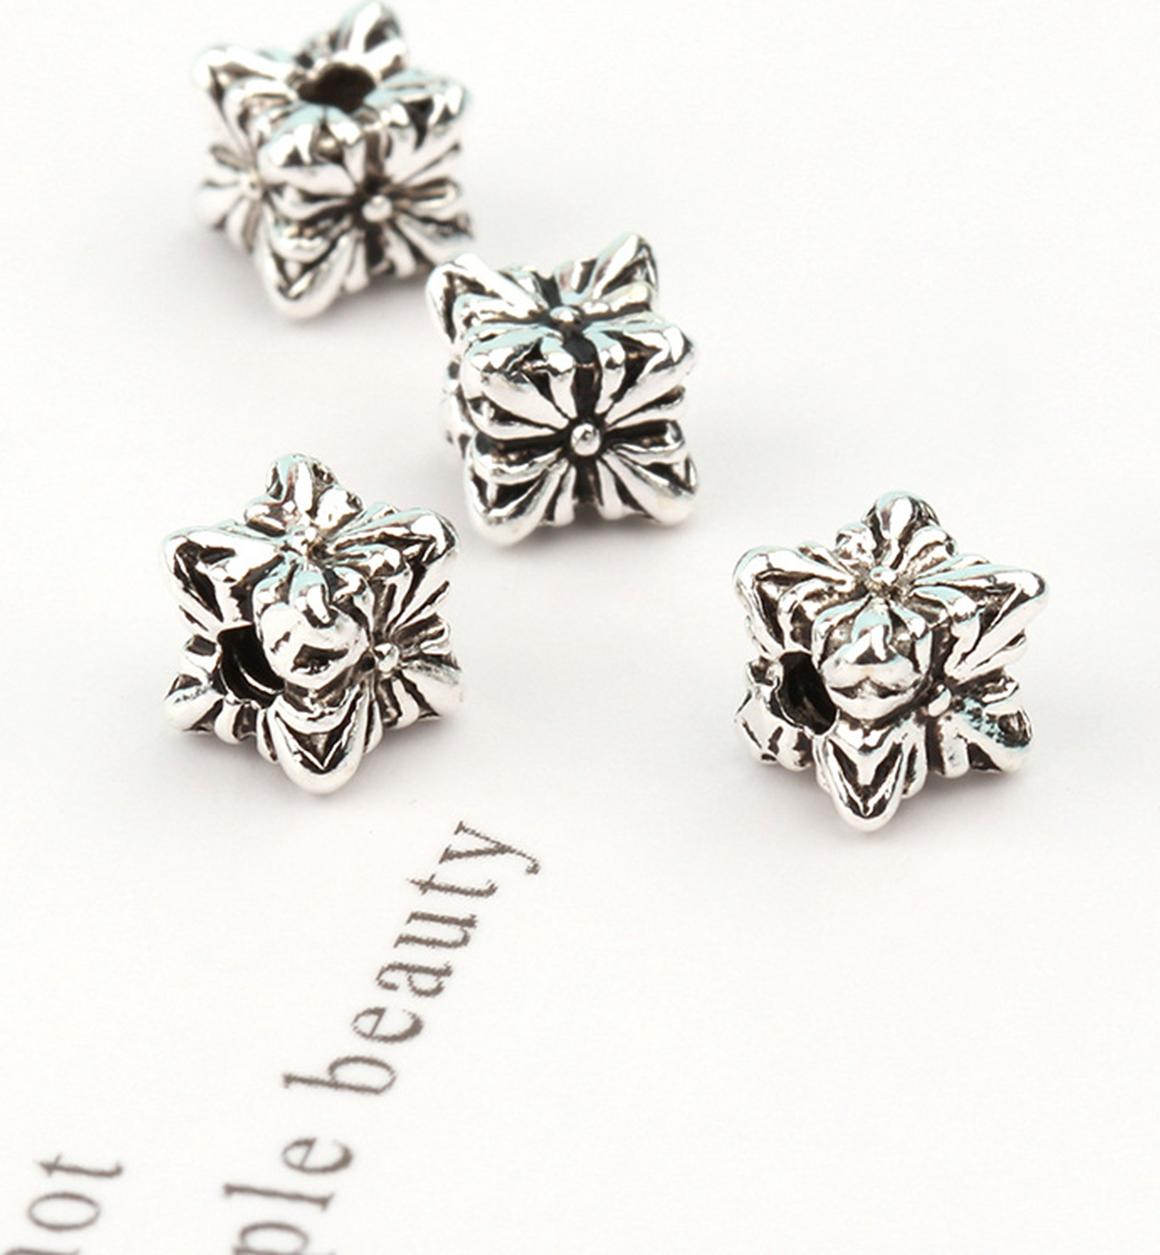 Combo 4 cái charm bạc chặn hình hoa - Ngọc Quý Gemstones